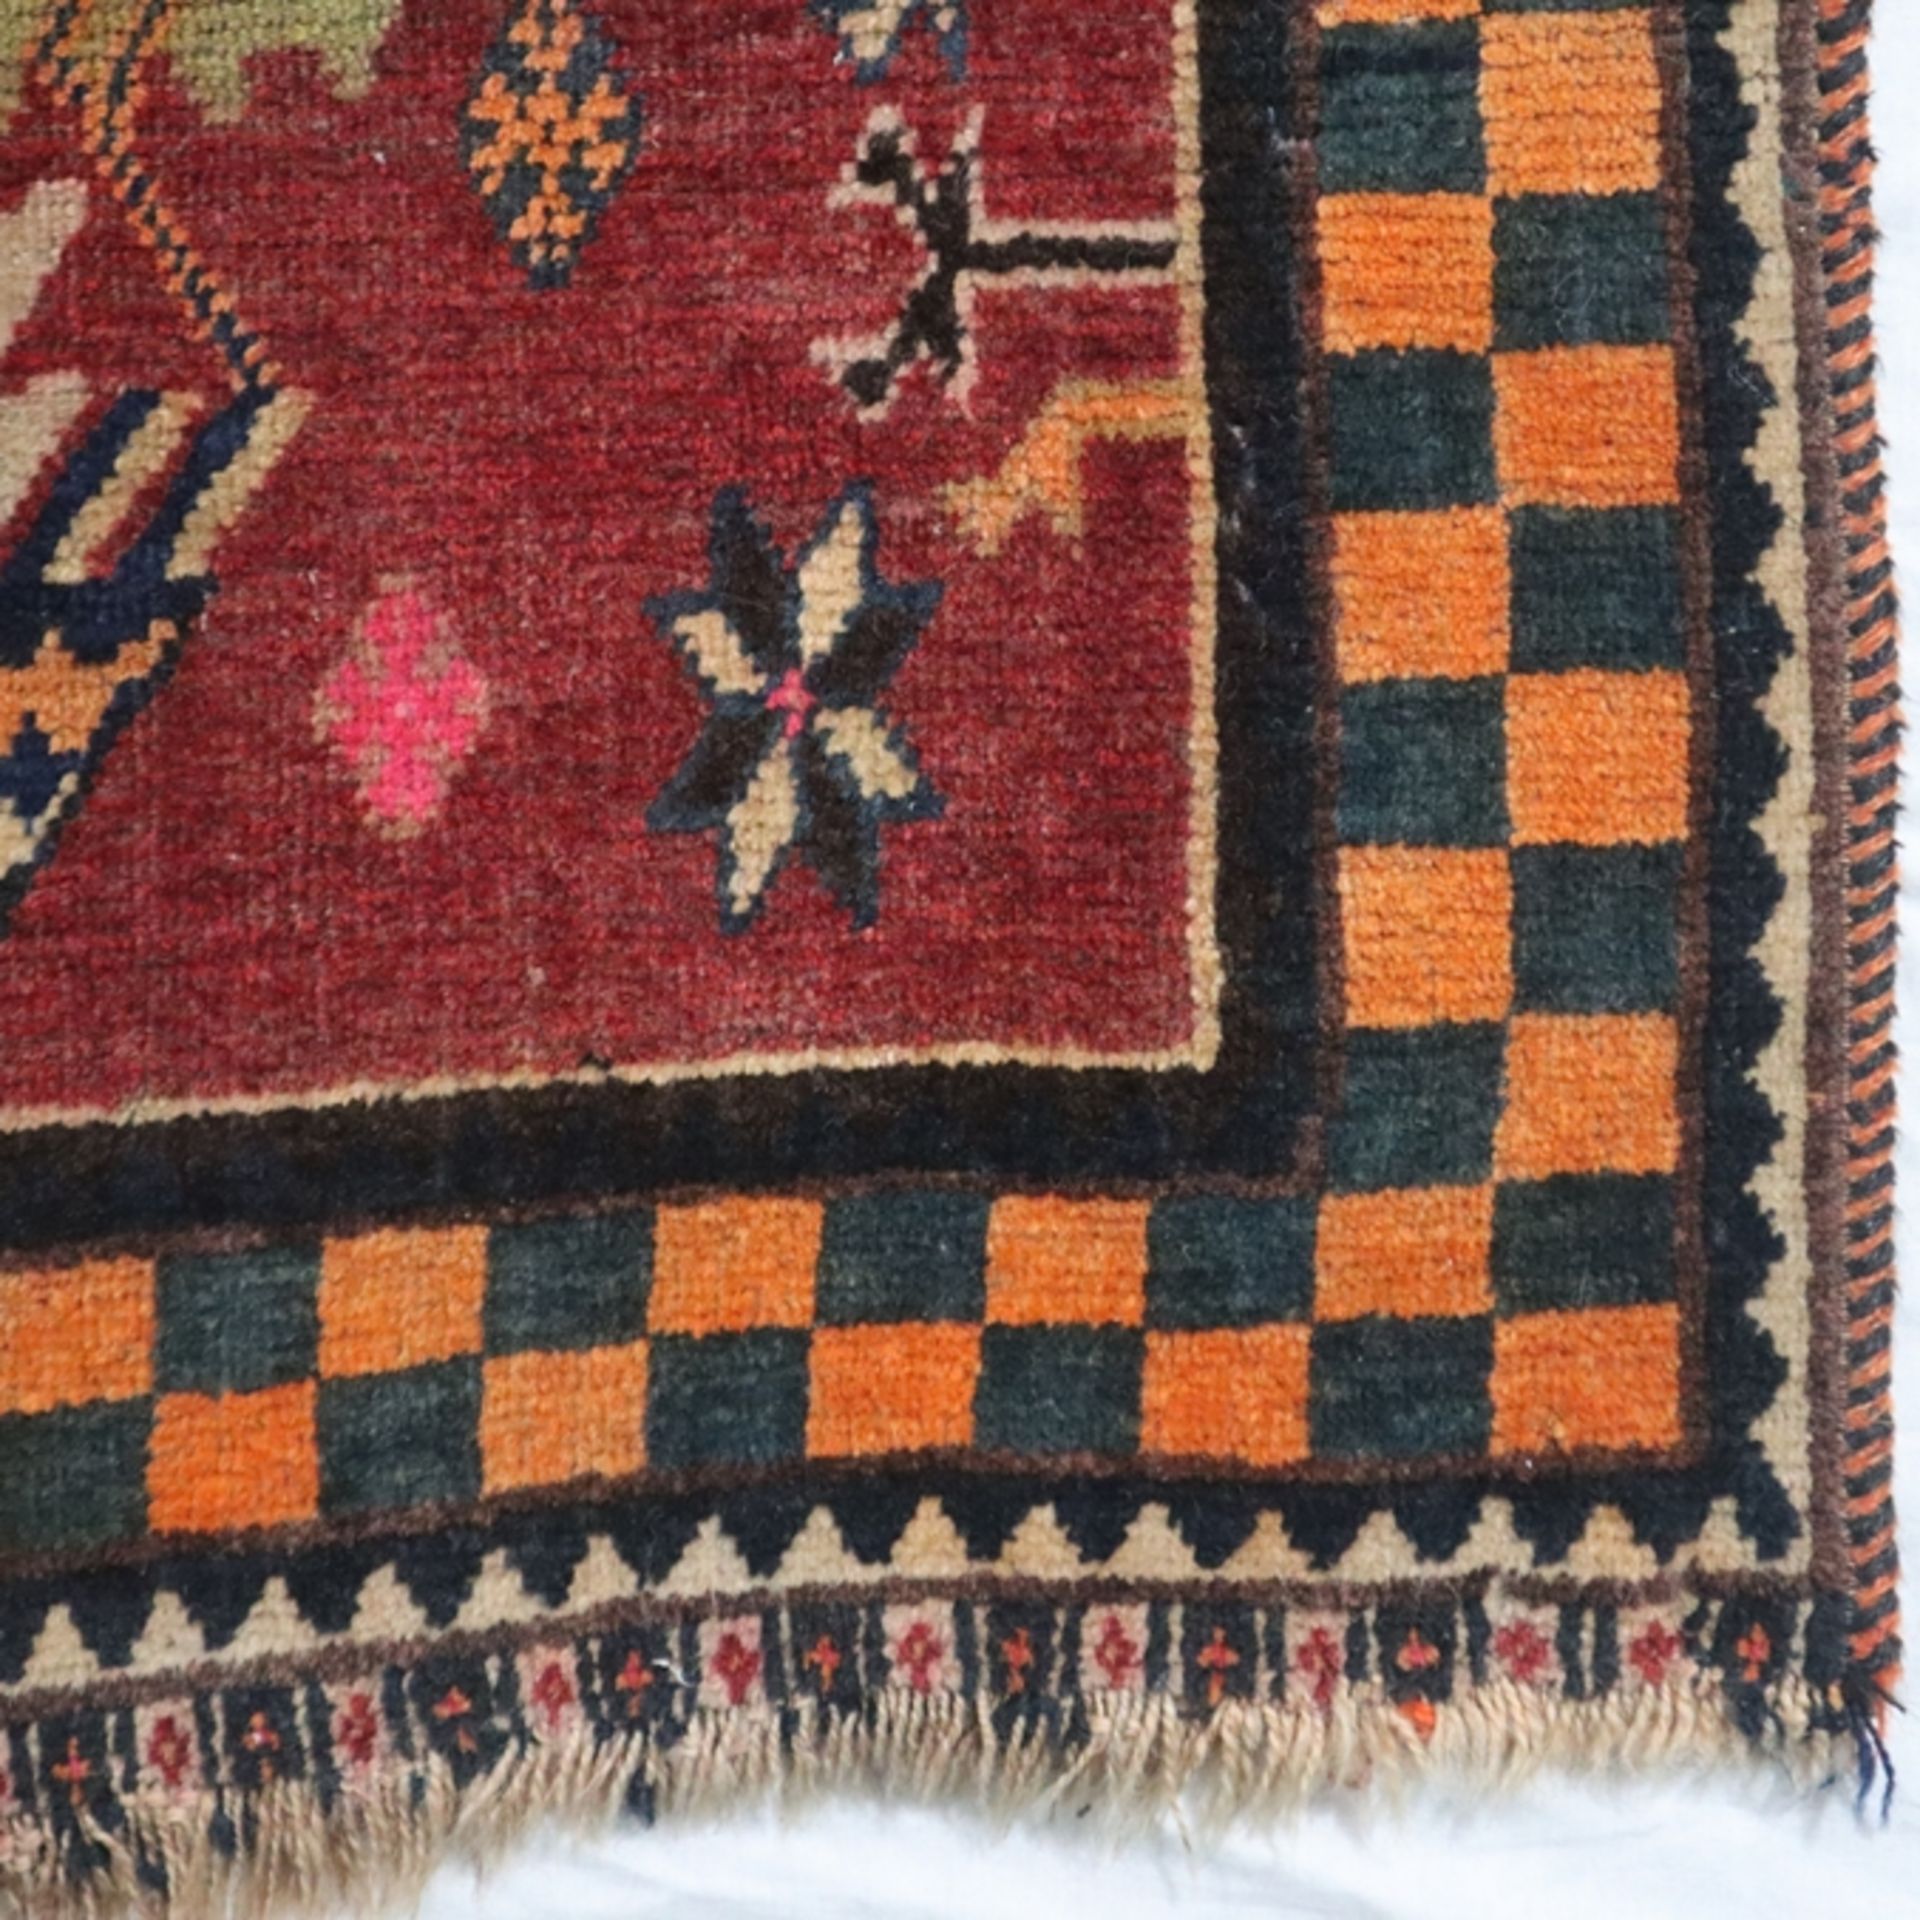 Teppich - wohl Kaukasus, Wolle, Pflanzenfarben, Vogelmuster, Rand mit Schachbrettmuster, Gebrauchss - Image 4 of 10